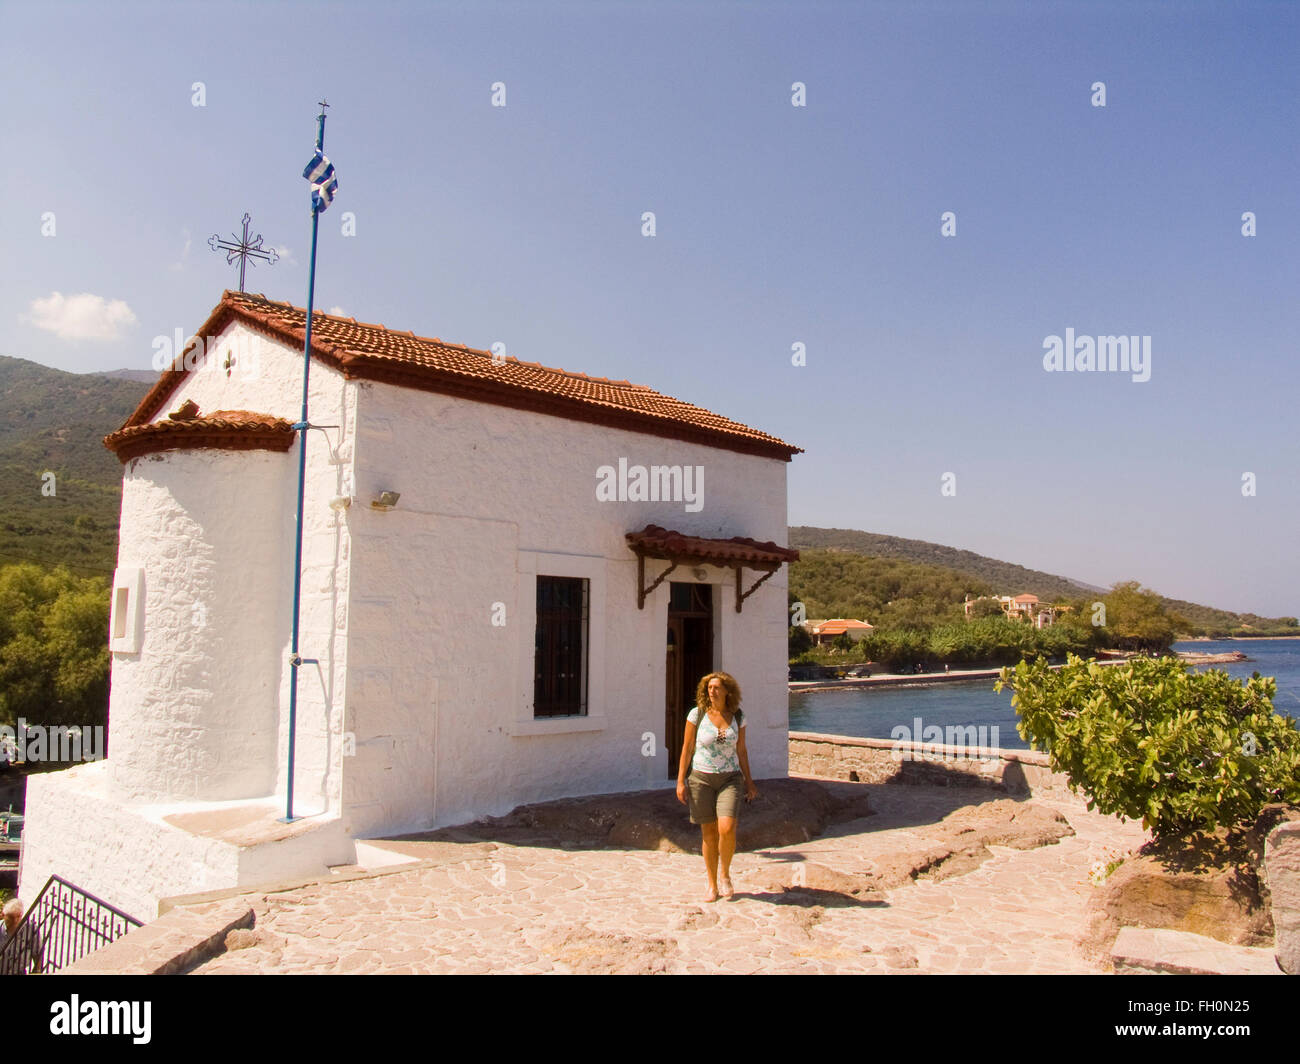 Église, sykamineas skala, l'île de Lesbos, au nord-ouest de la mer Égée, Grèce, Europe Banque D'Images